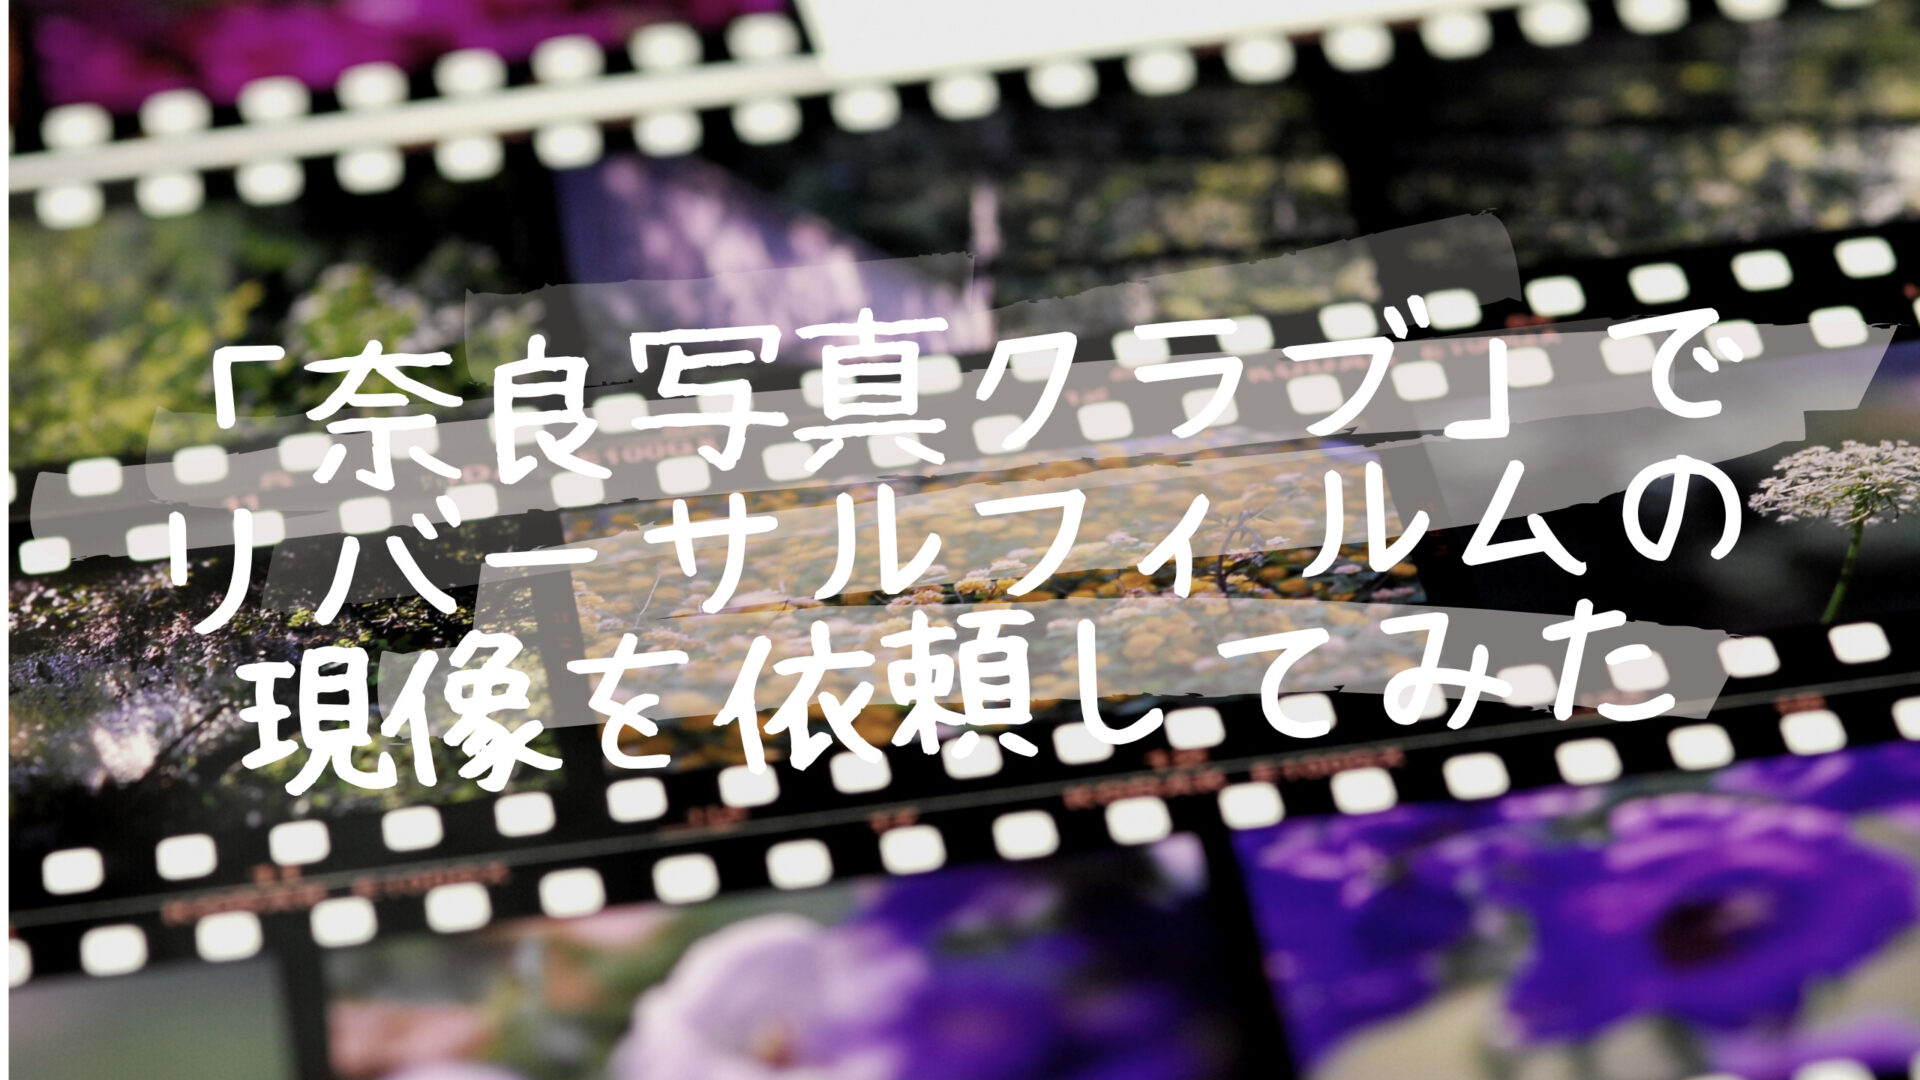 奈良写真クラブでリバーサルフィルムを現像してみた